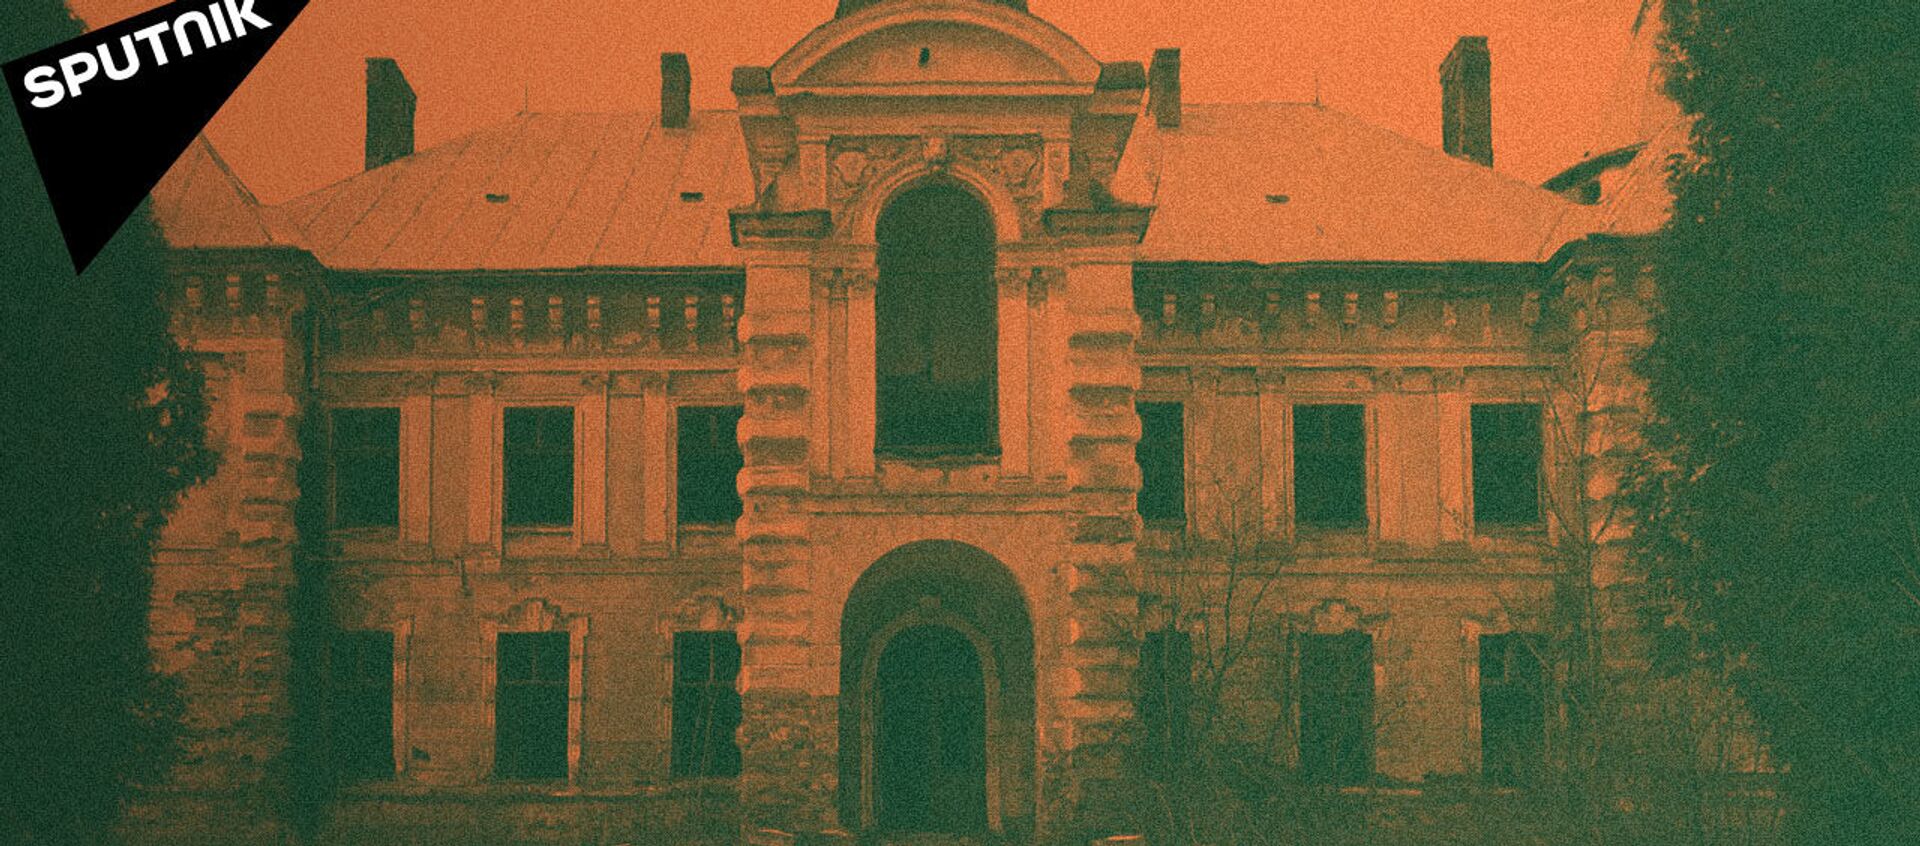 Как на Украине разрушаются старинные дворцы и усадьбы - Sputnik Таджикистан, 1920, 22.02.2021